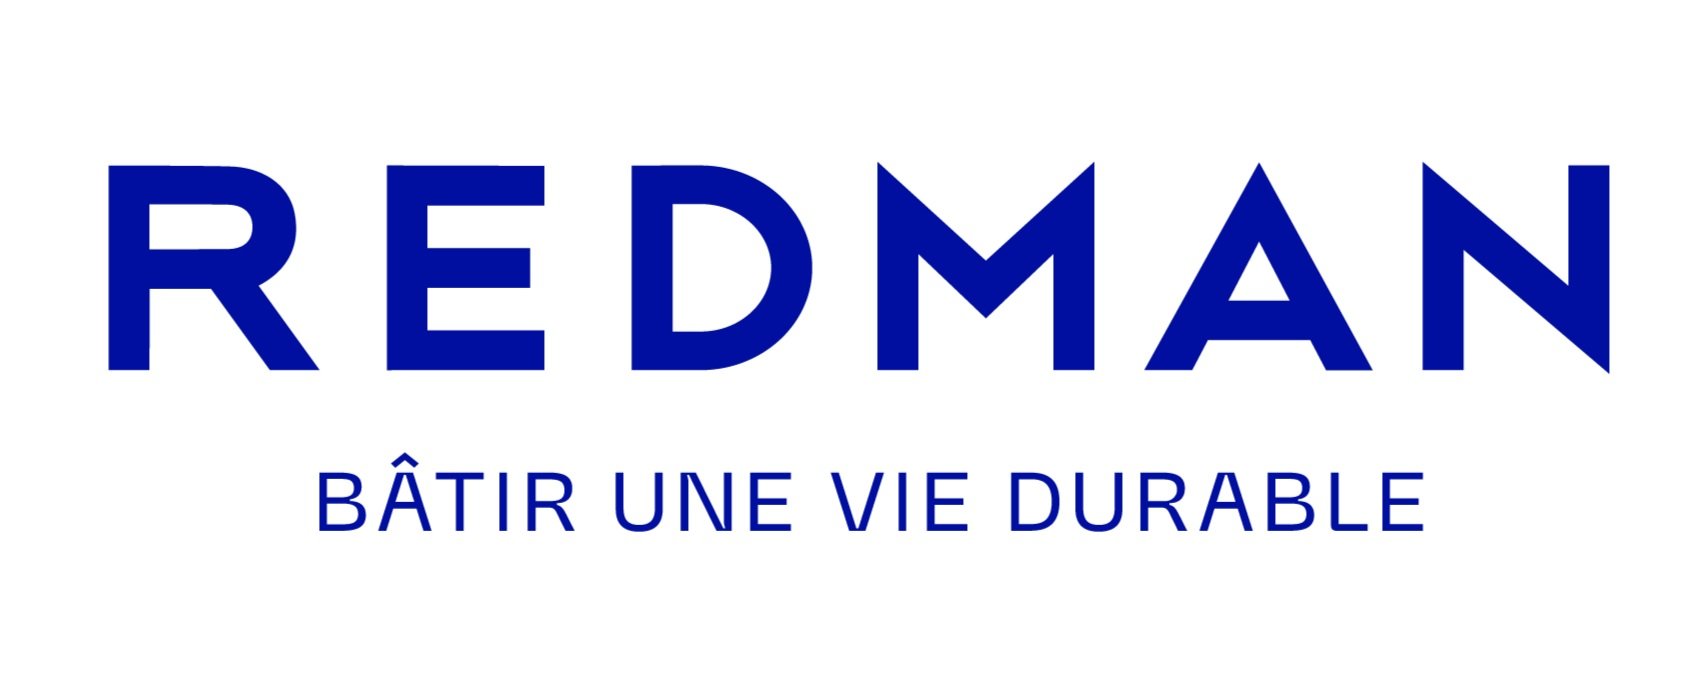 Redman_Logo.jpg